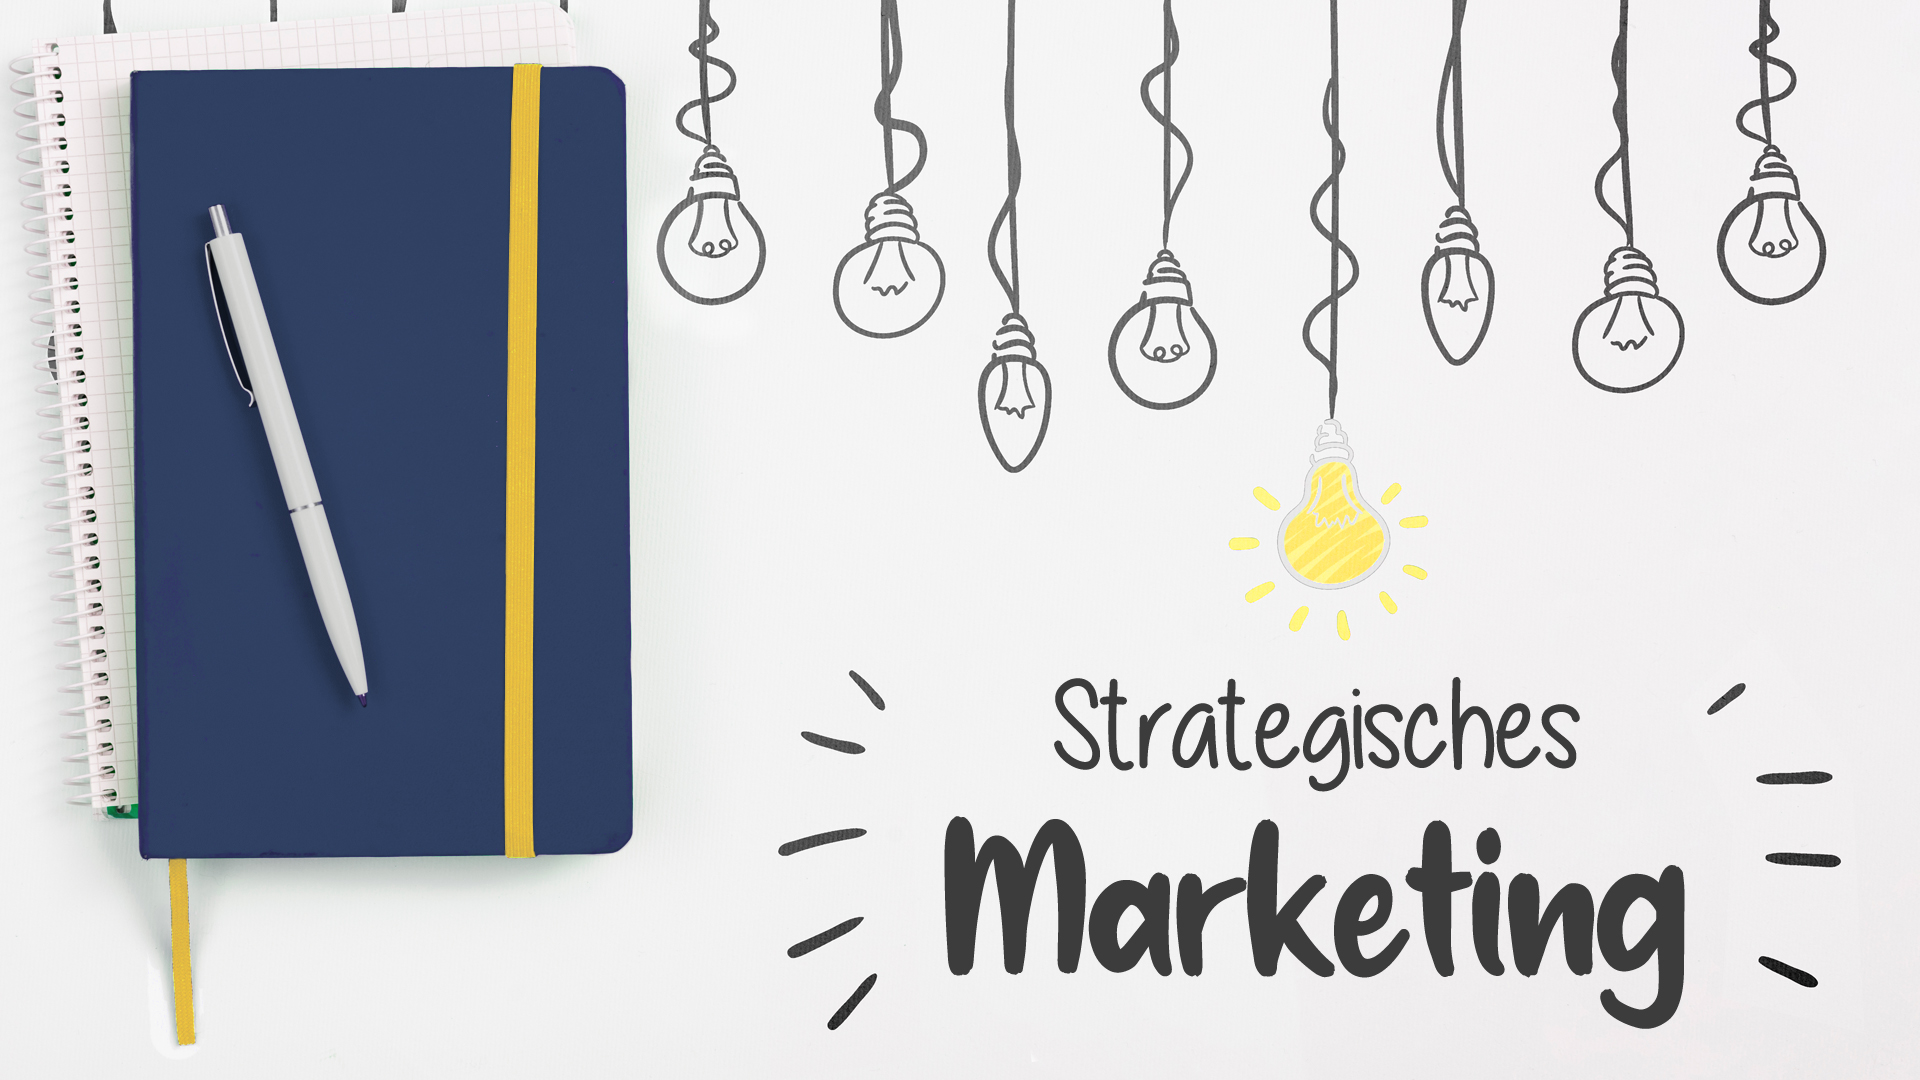 Notizbuch und Glühbirnen mit Bildunterschrift Strategisches Marketing